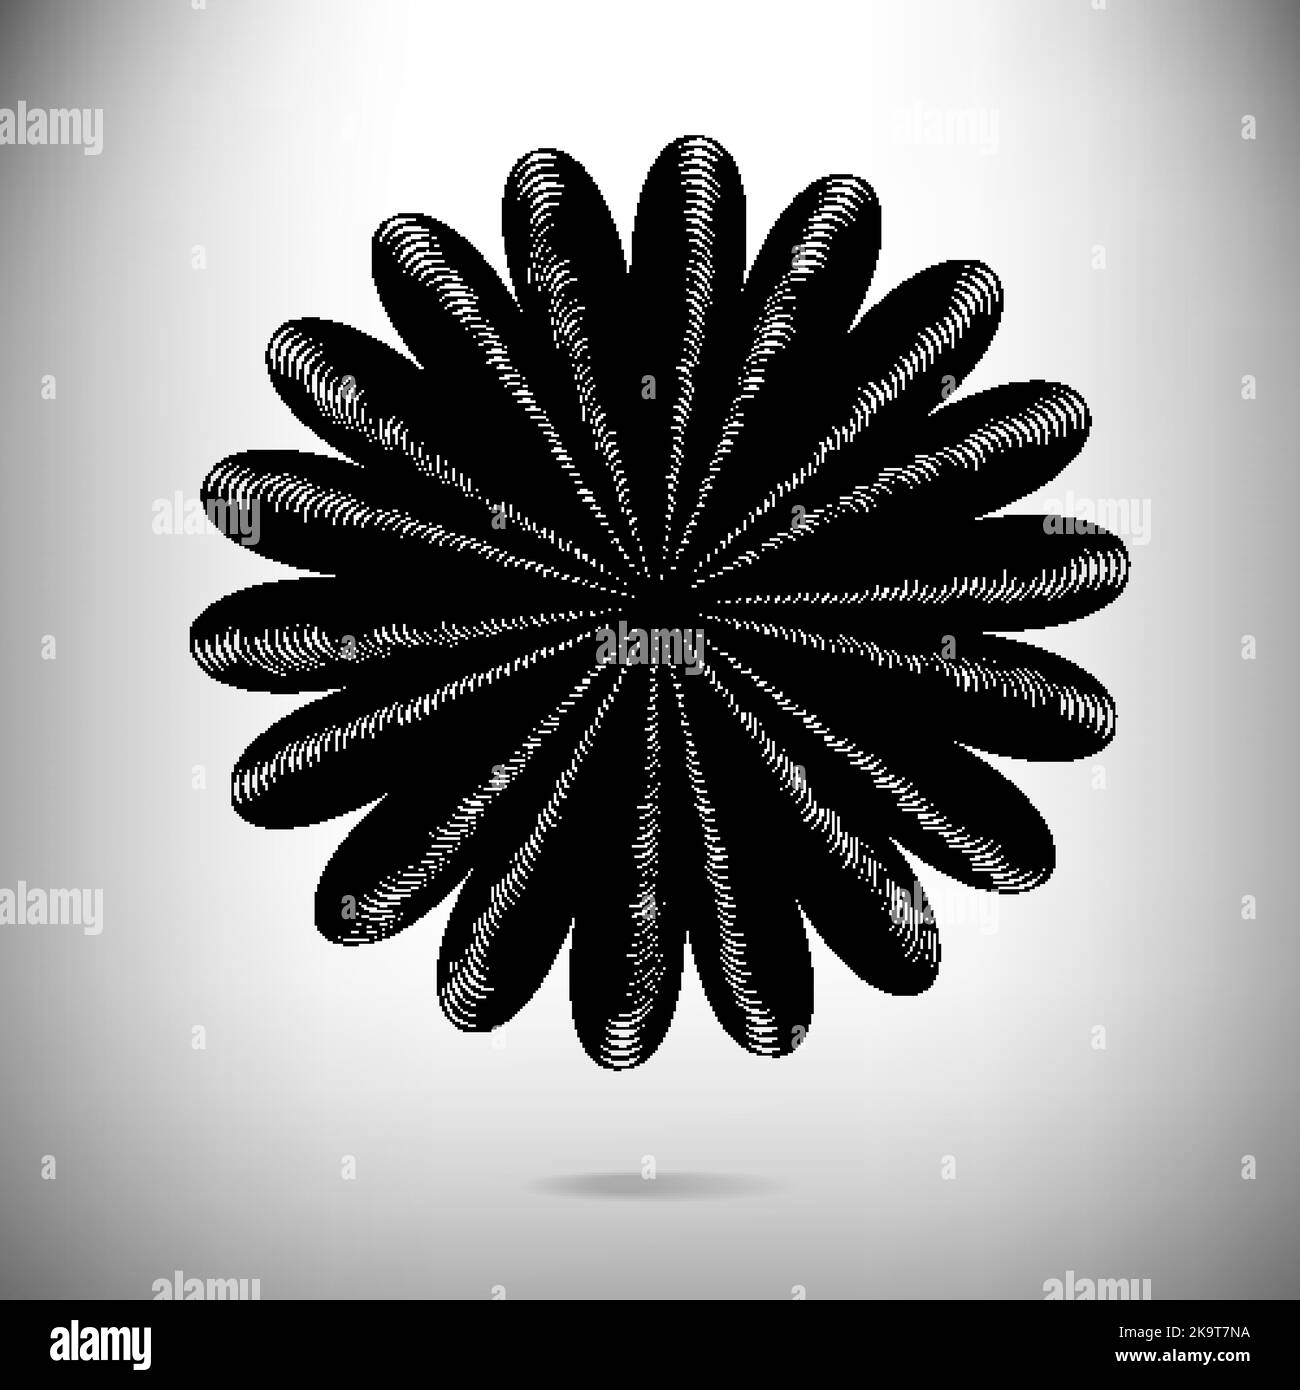 Abstrakter Hintergrund mit dekorativer stilisierter Blumenform aus konzentrischen schwarzen und weißen Streifen. Stock Vektor